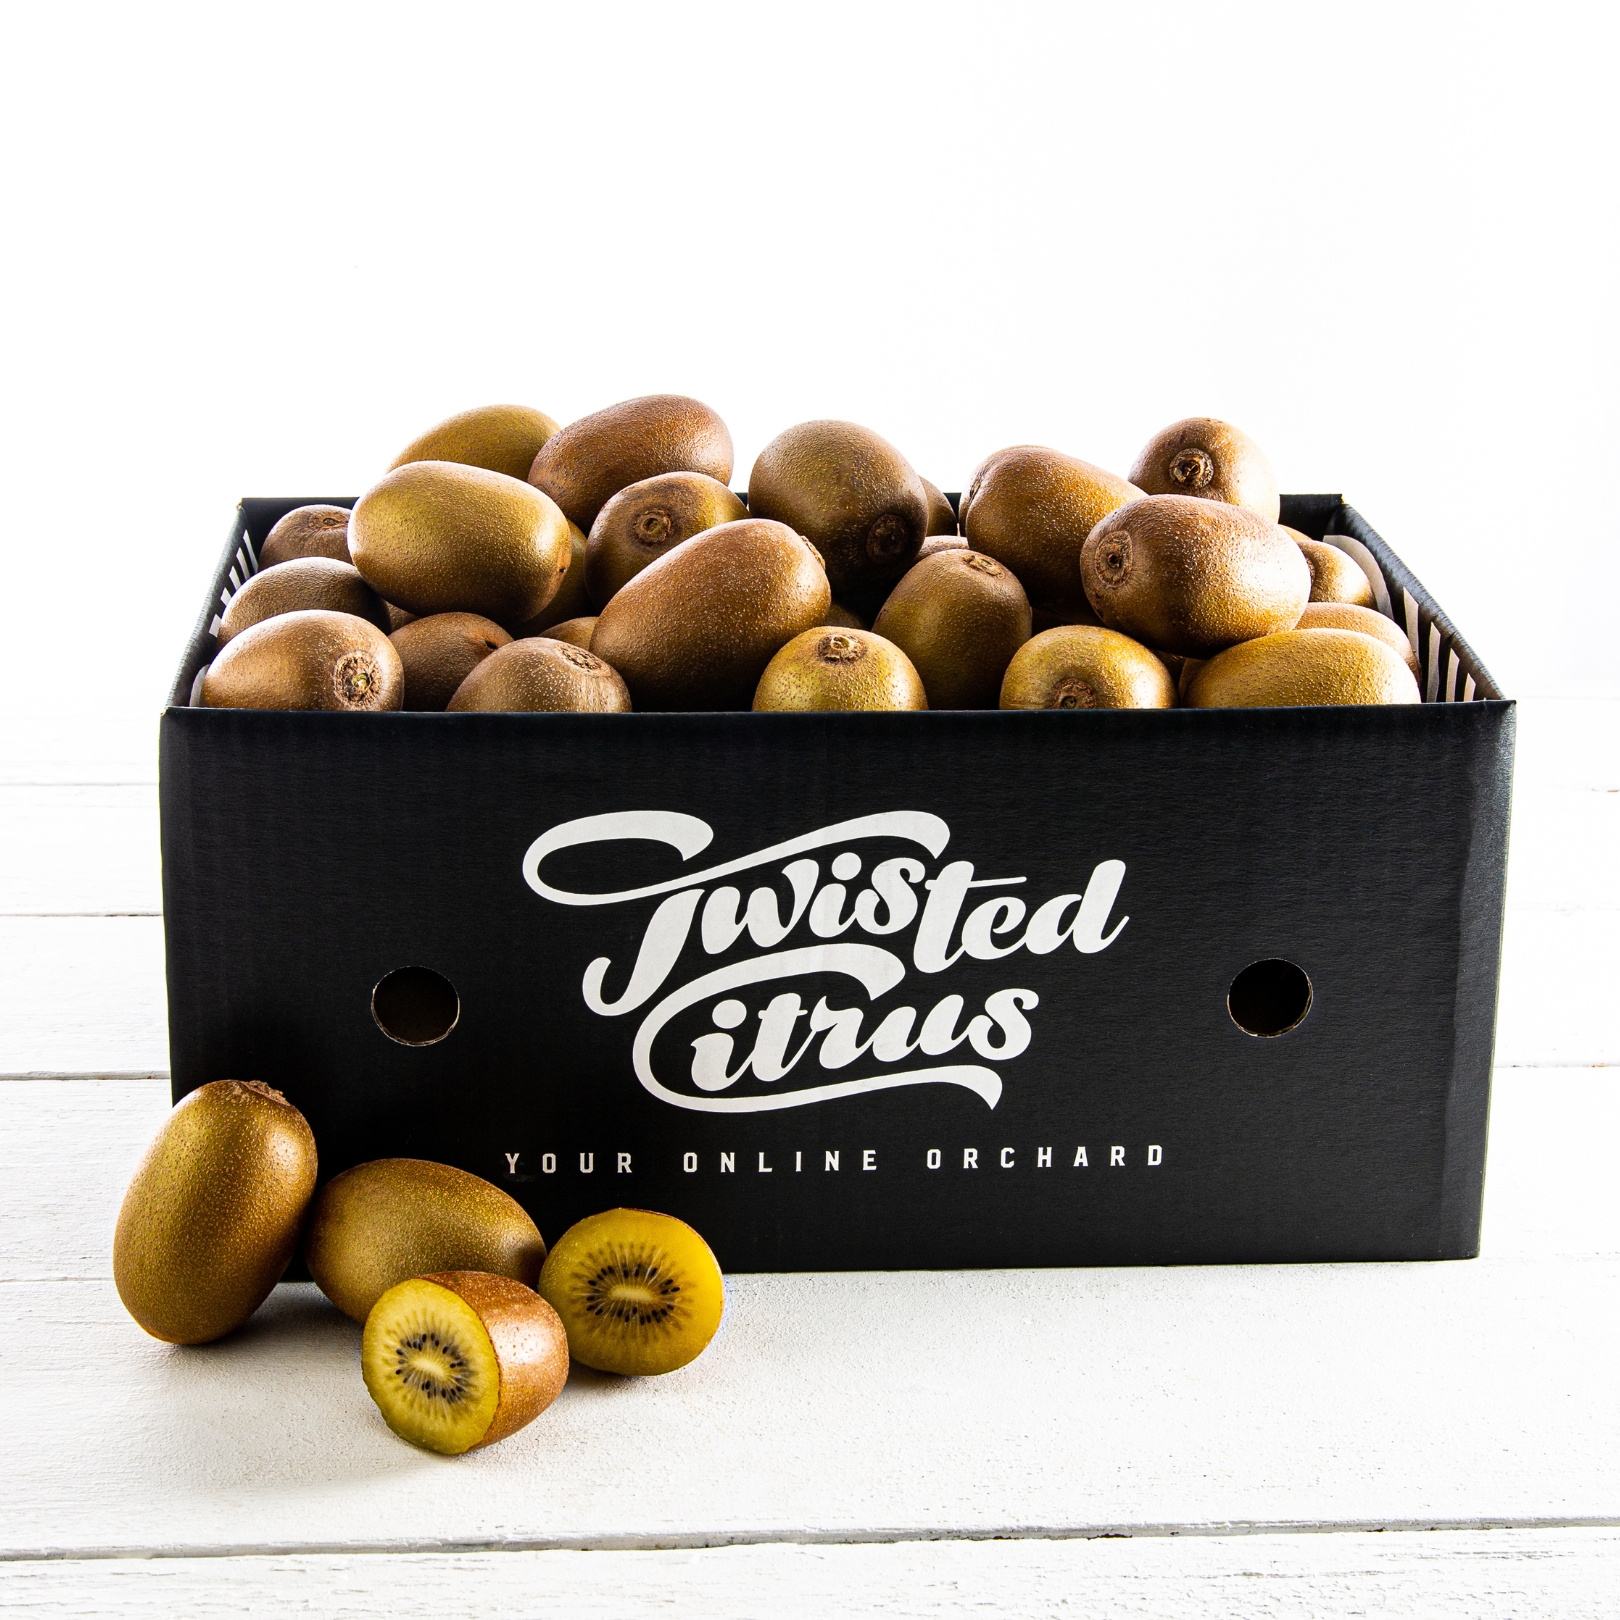 Kiwifruit - Gold fruit box delivery nz